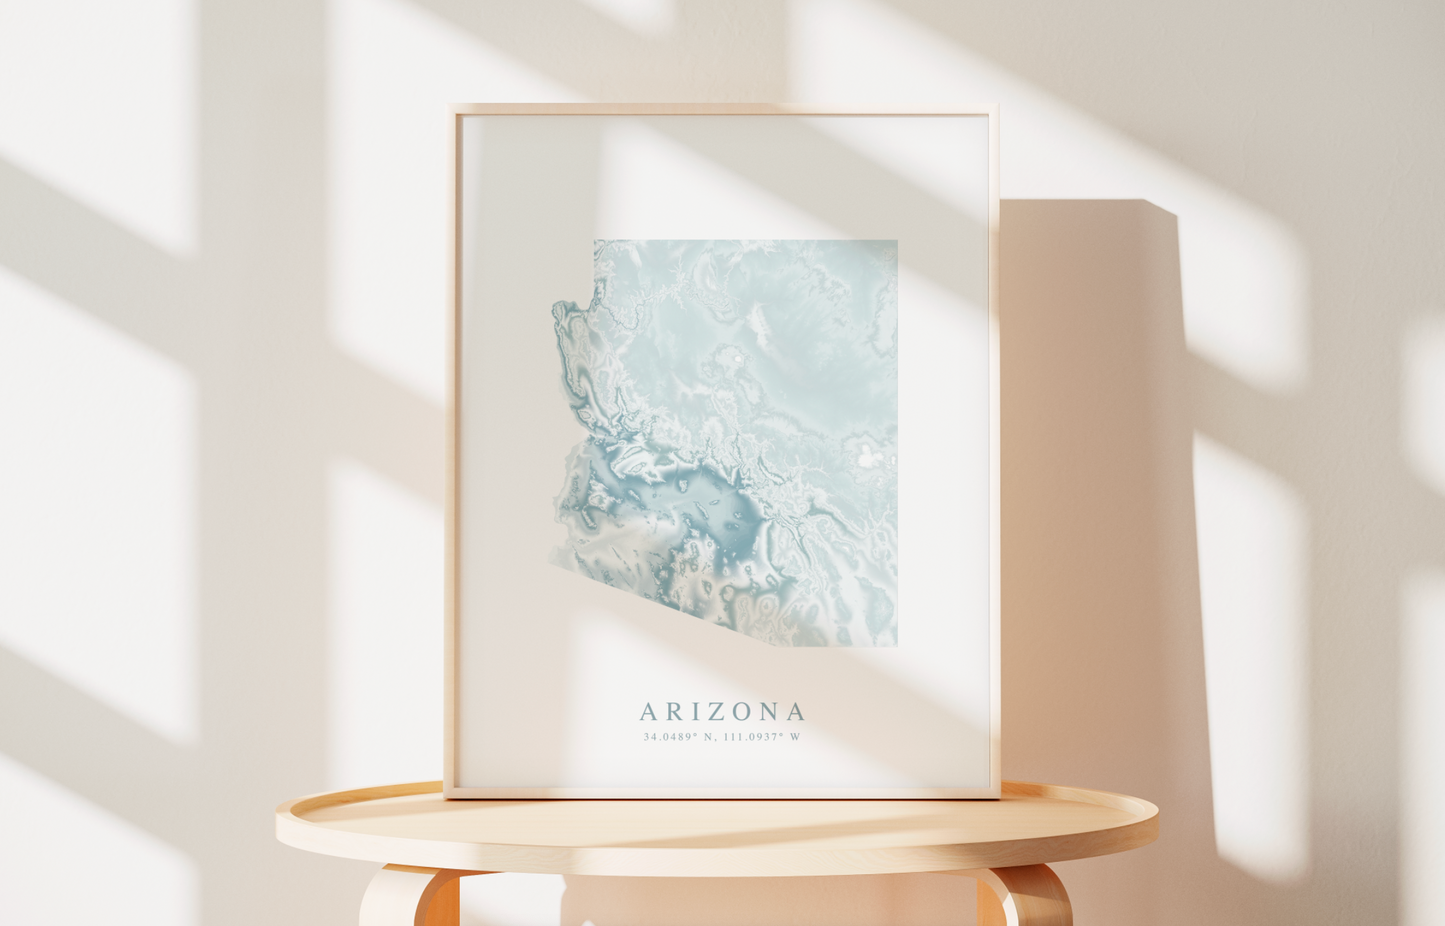 Arizona Map Print